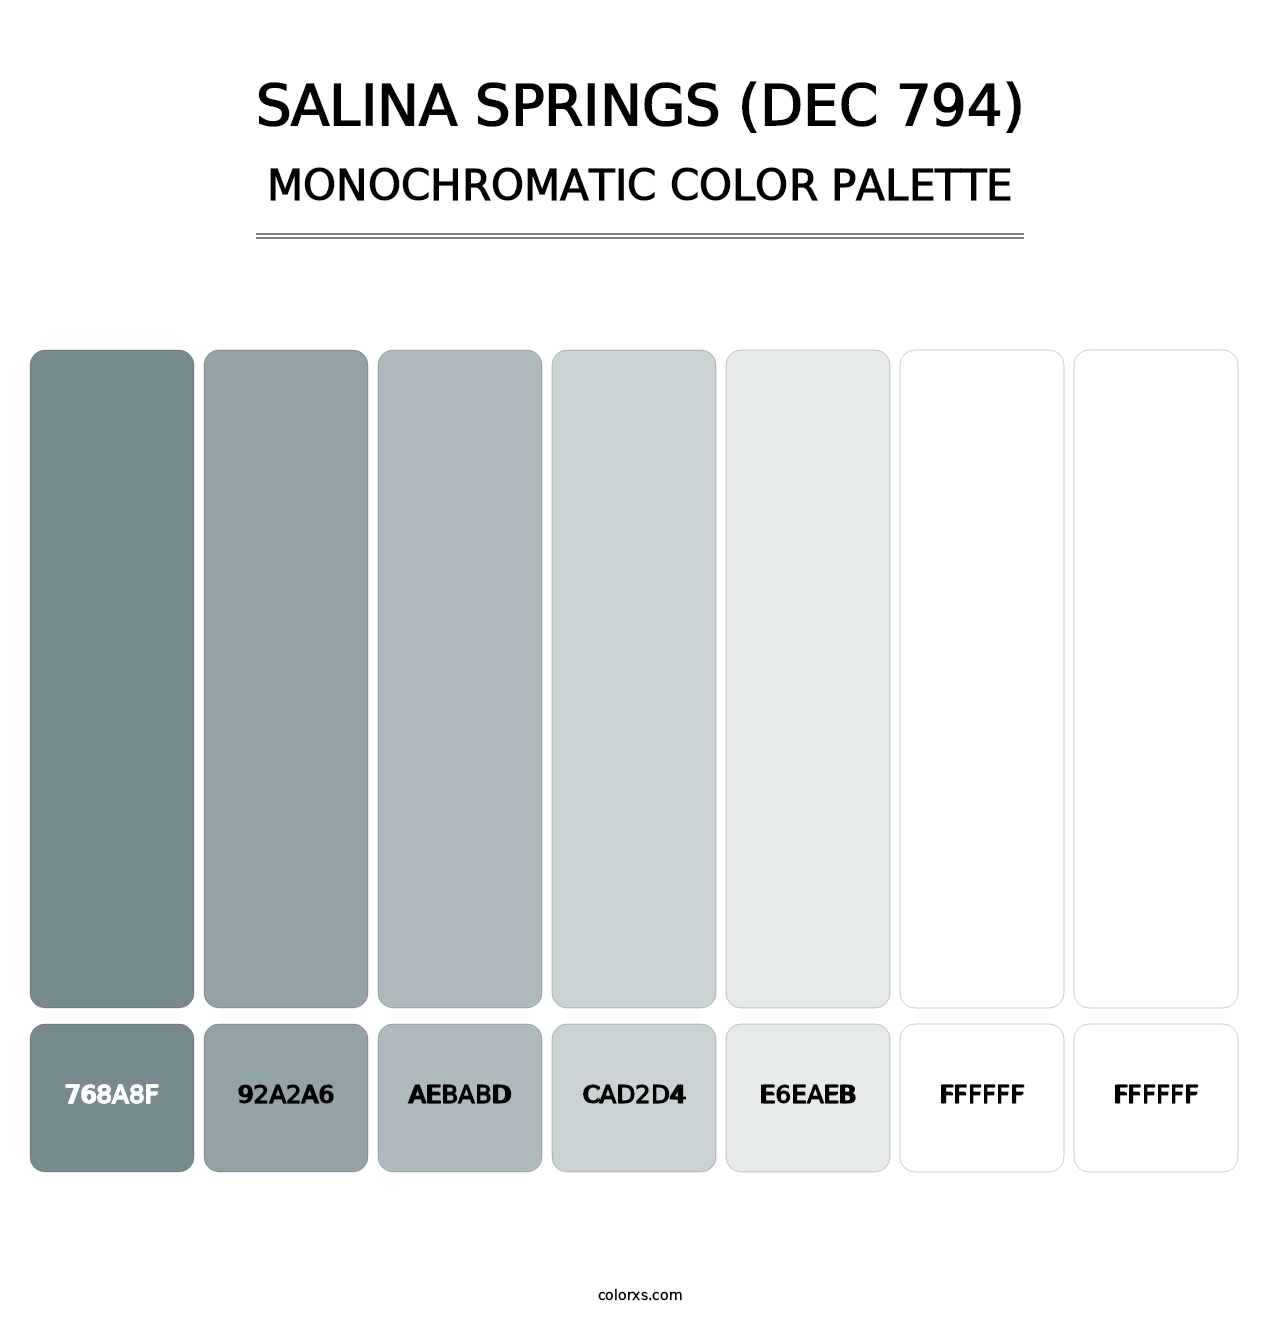 Salina Springs (DEC 794) - Monochromatic Color Palette